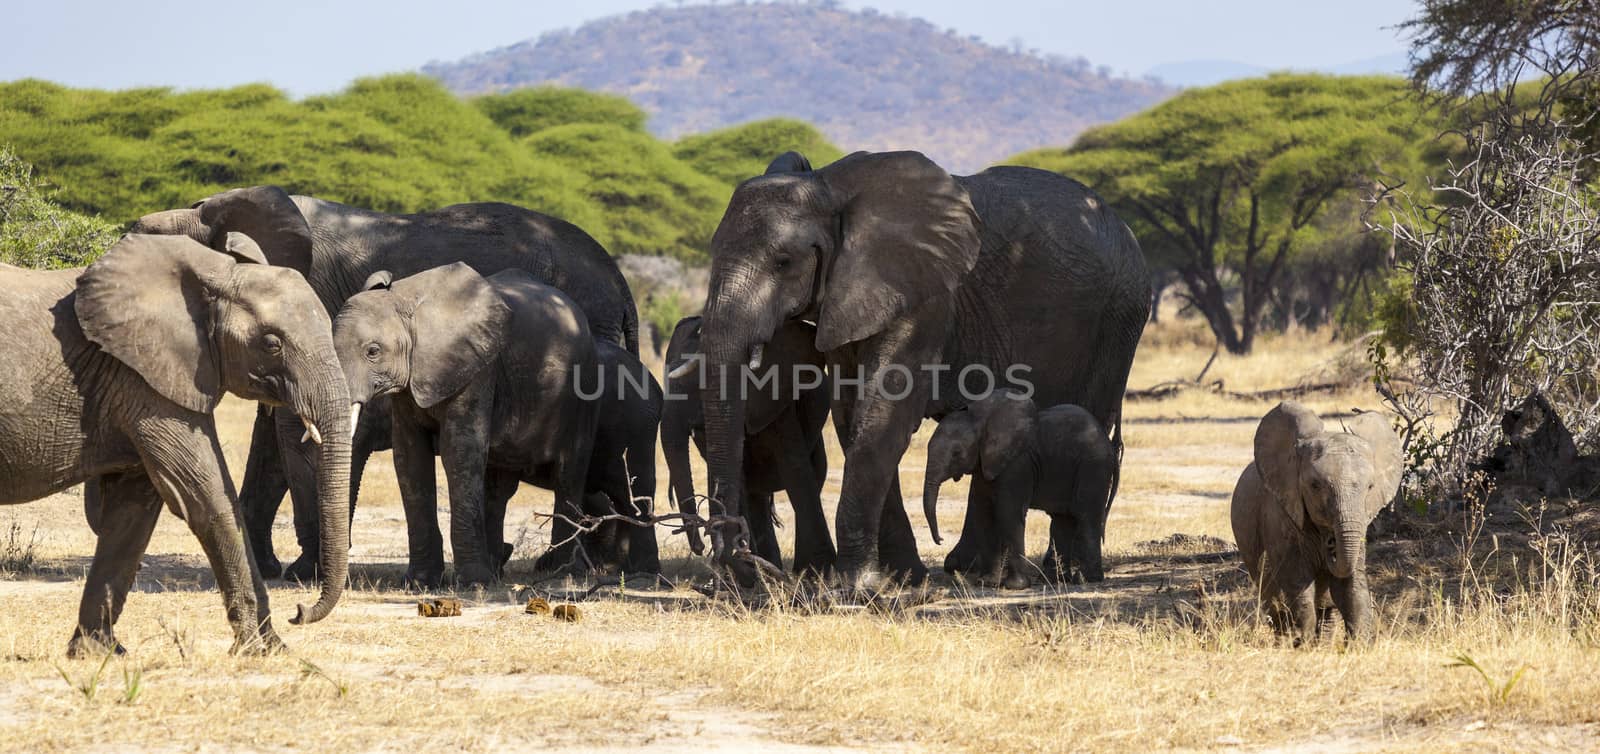 Elephants by Imagecom